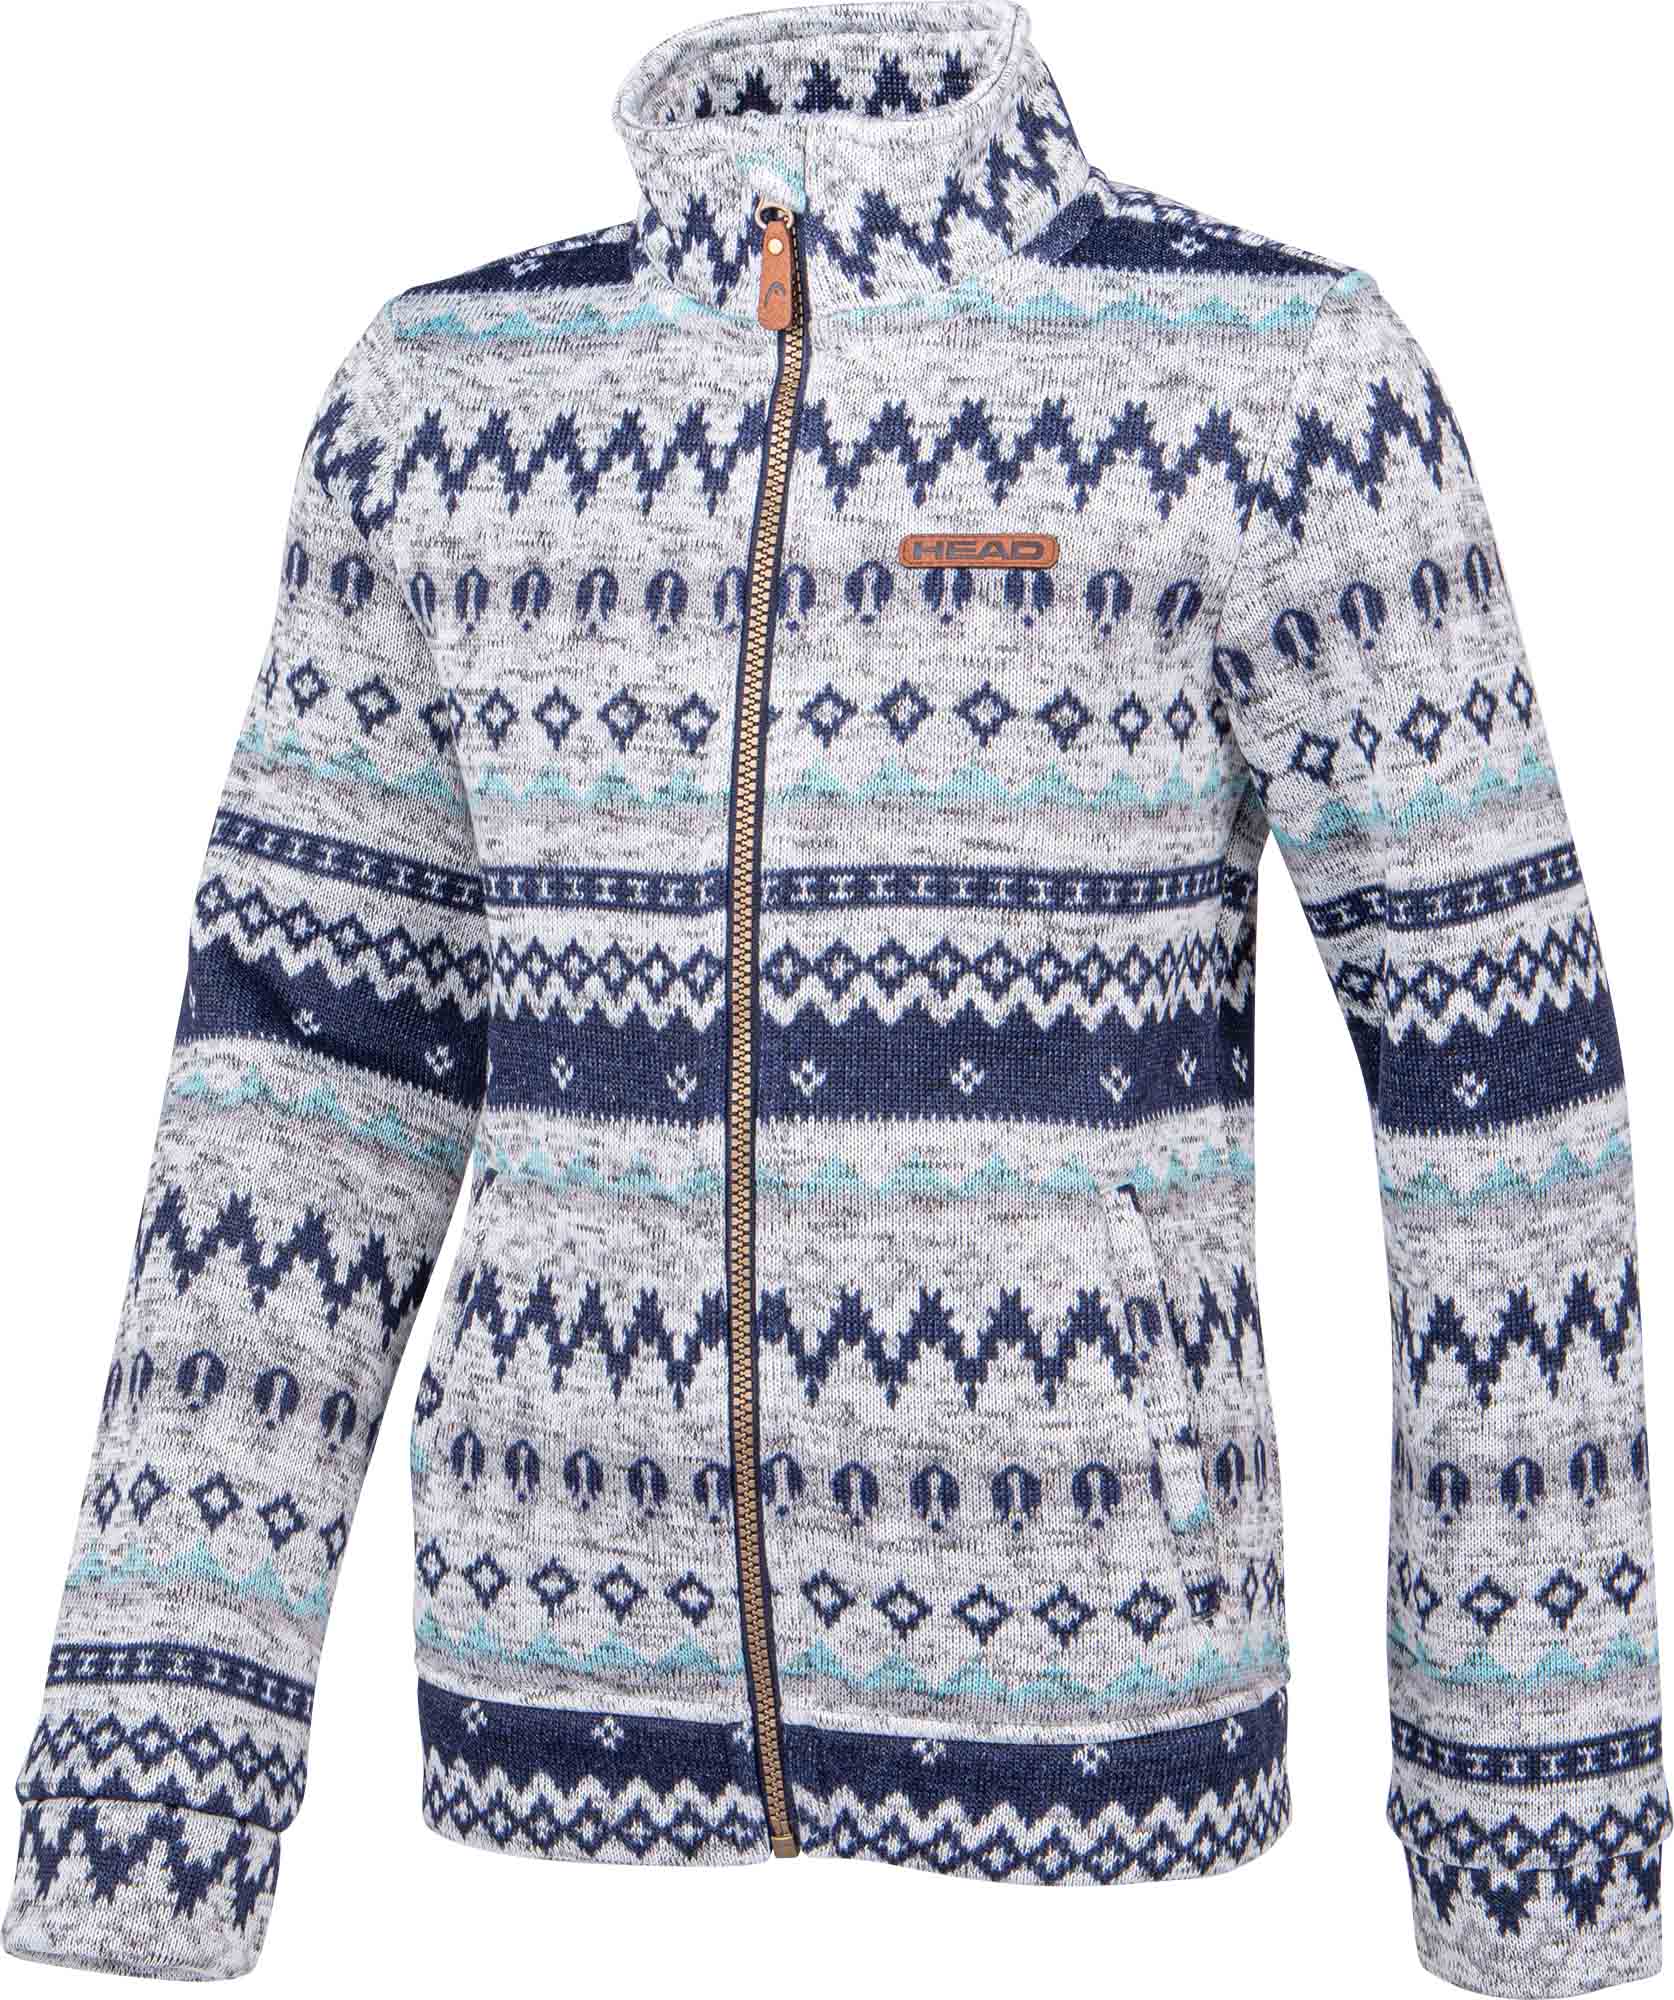 Children's fleece sweatshirt